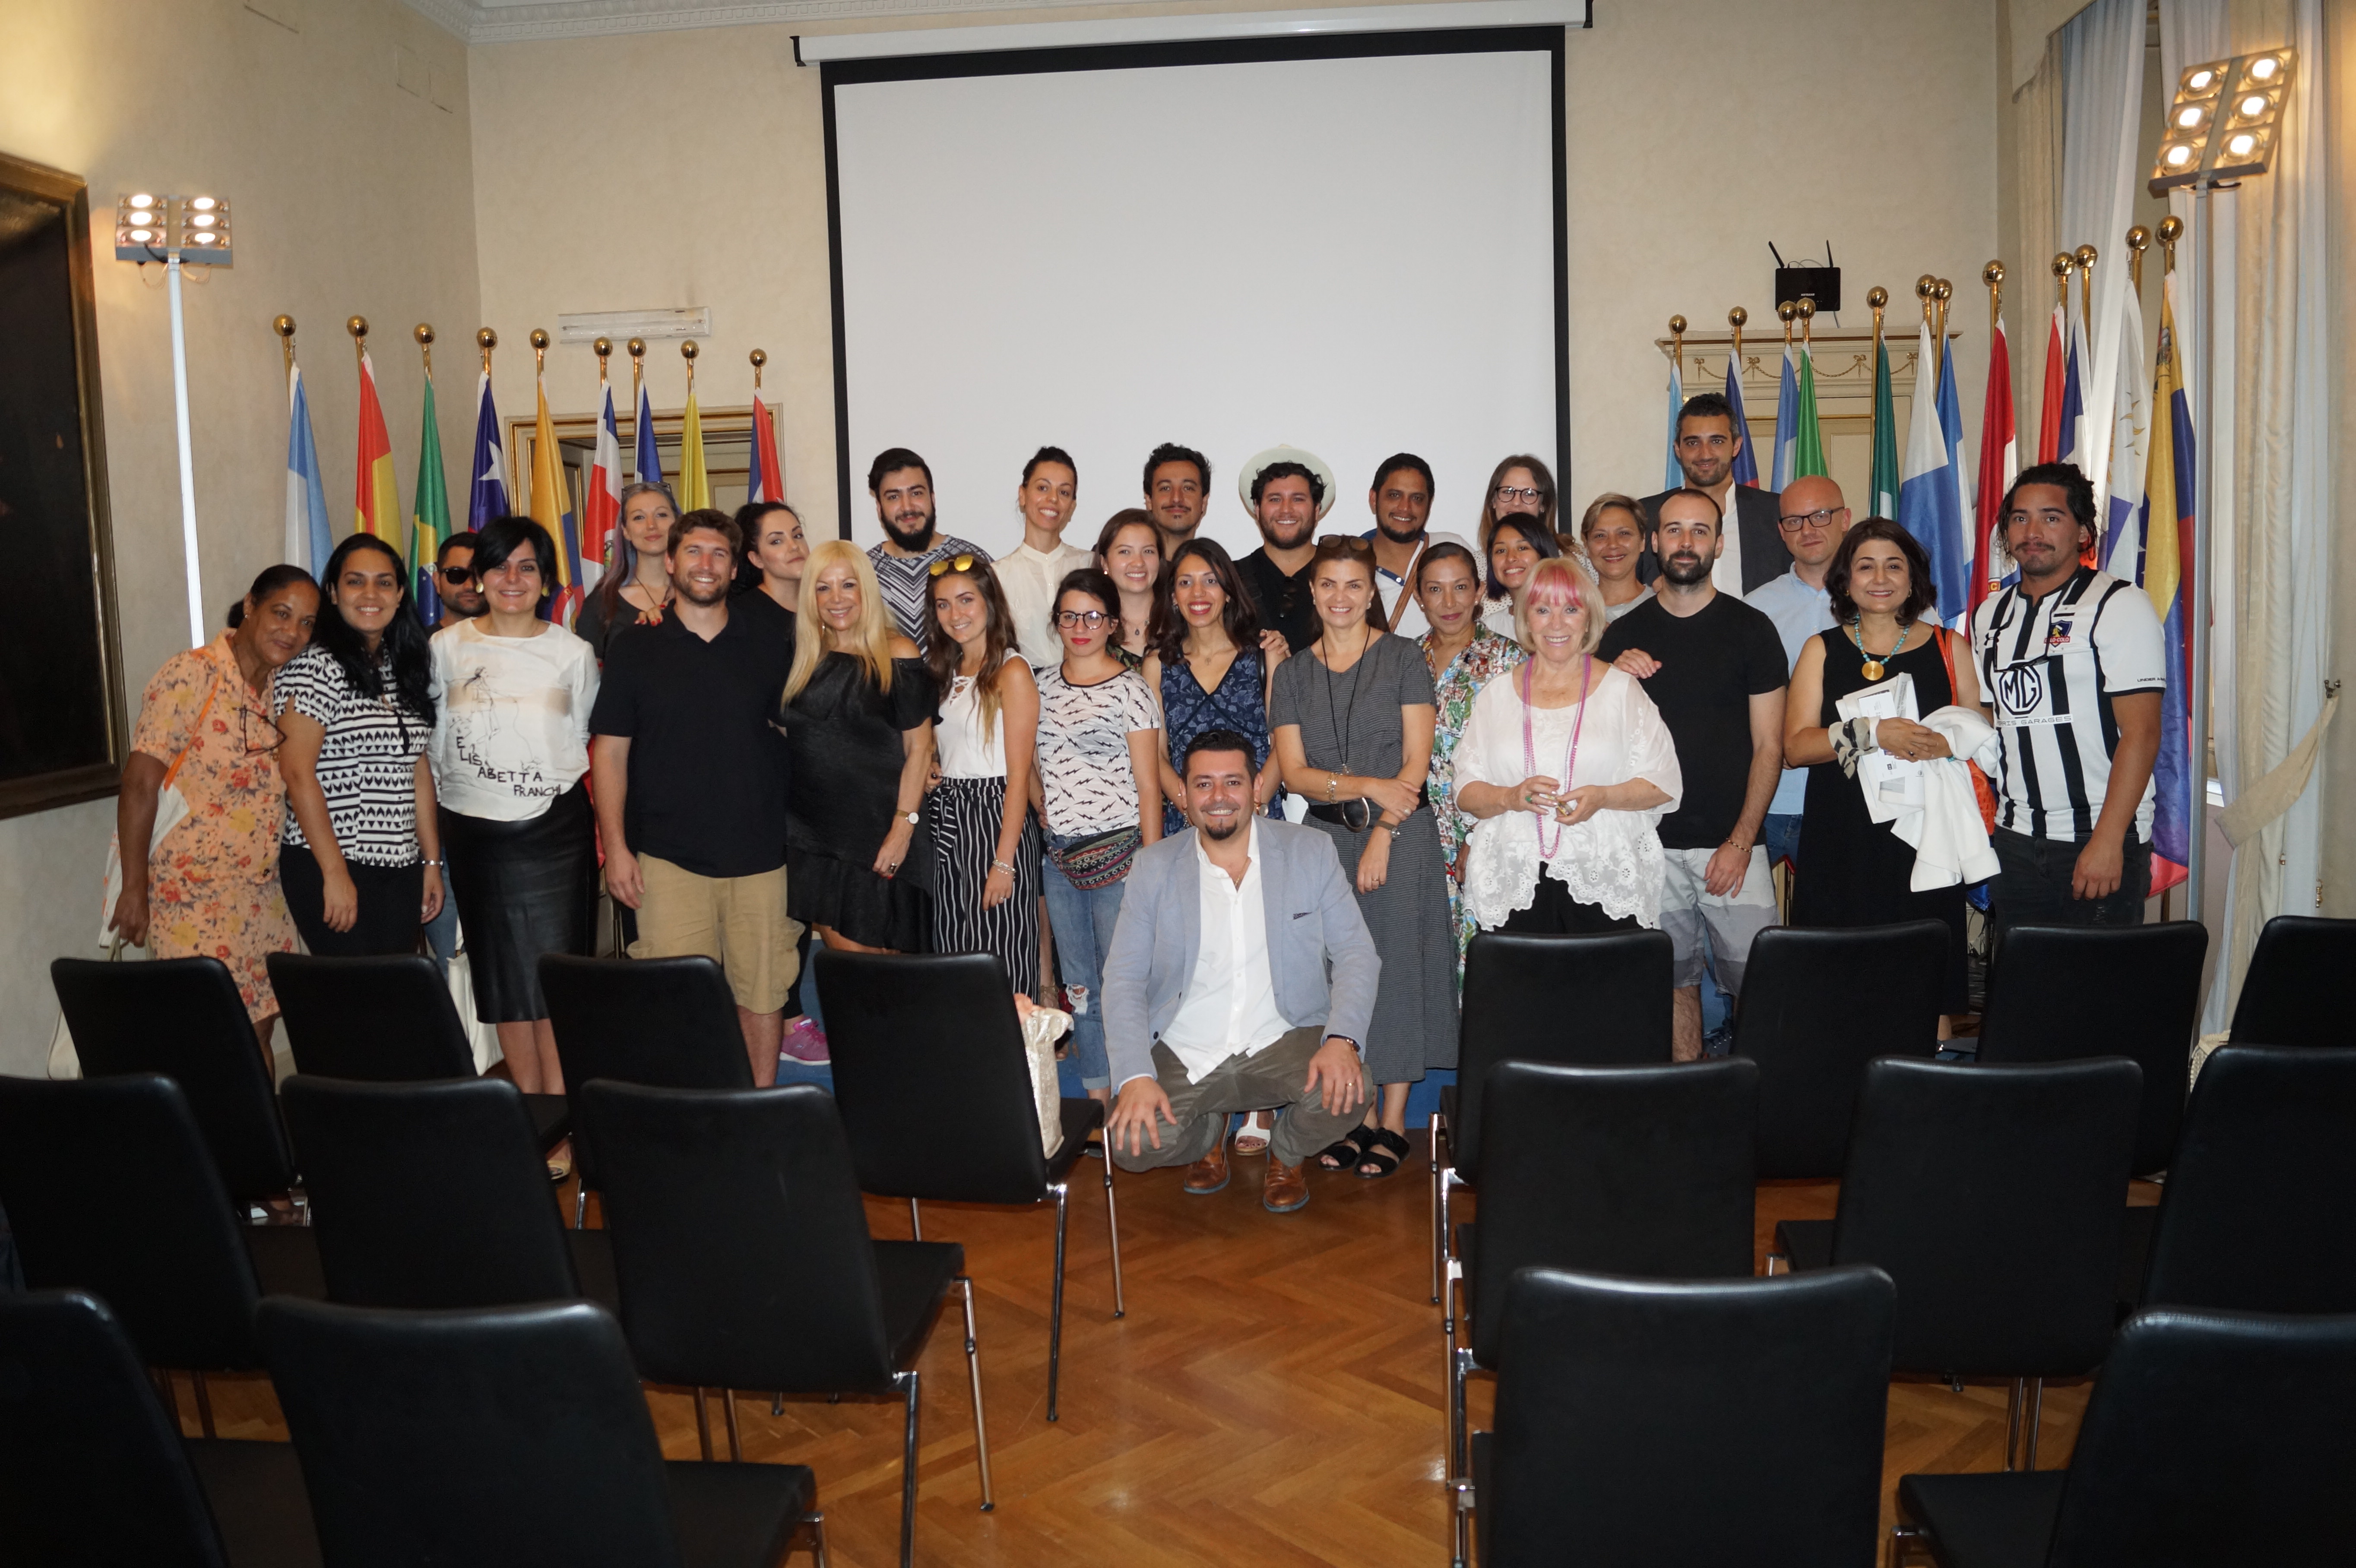 L’Istituto Italo Latino Americano ospita la presentazione del progetto Castello Errante